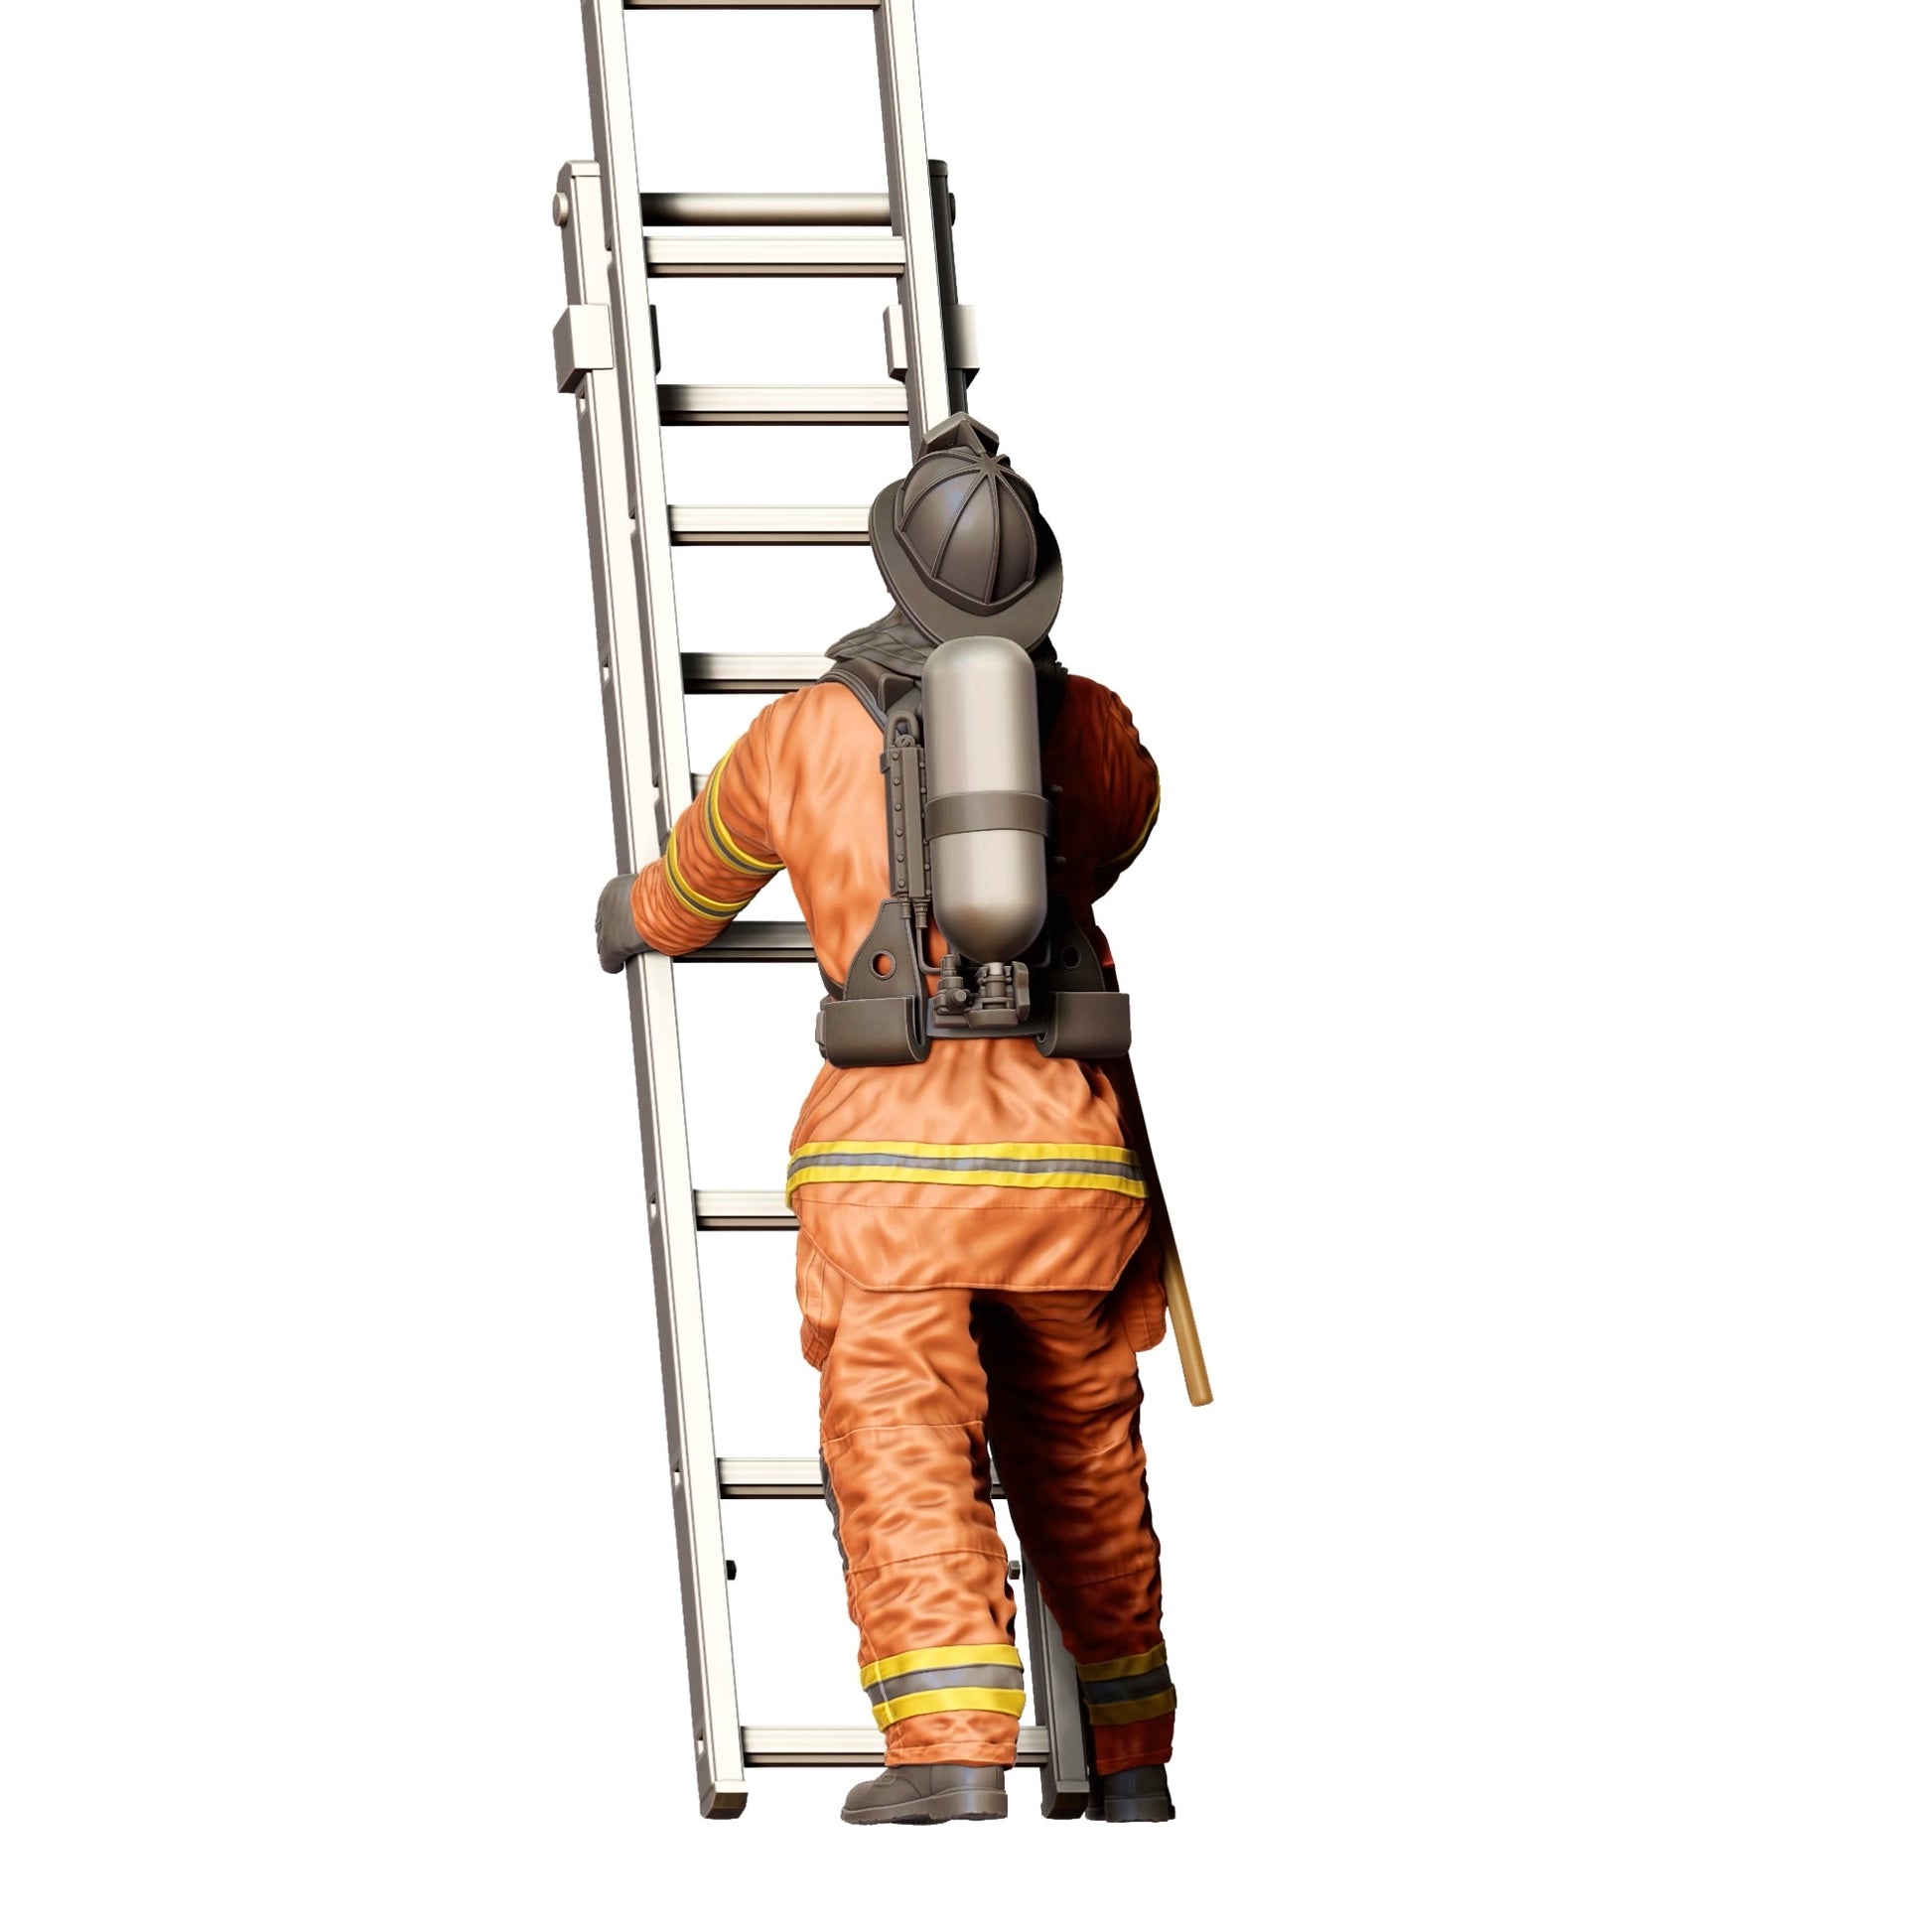 Diorama Modellbau Produktfoto 0: Feuerwehrmann Amerikanisch - Hält Leiter hinten (Ref. Nr. 310)